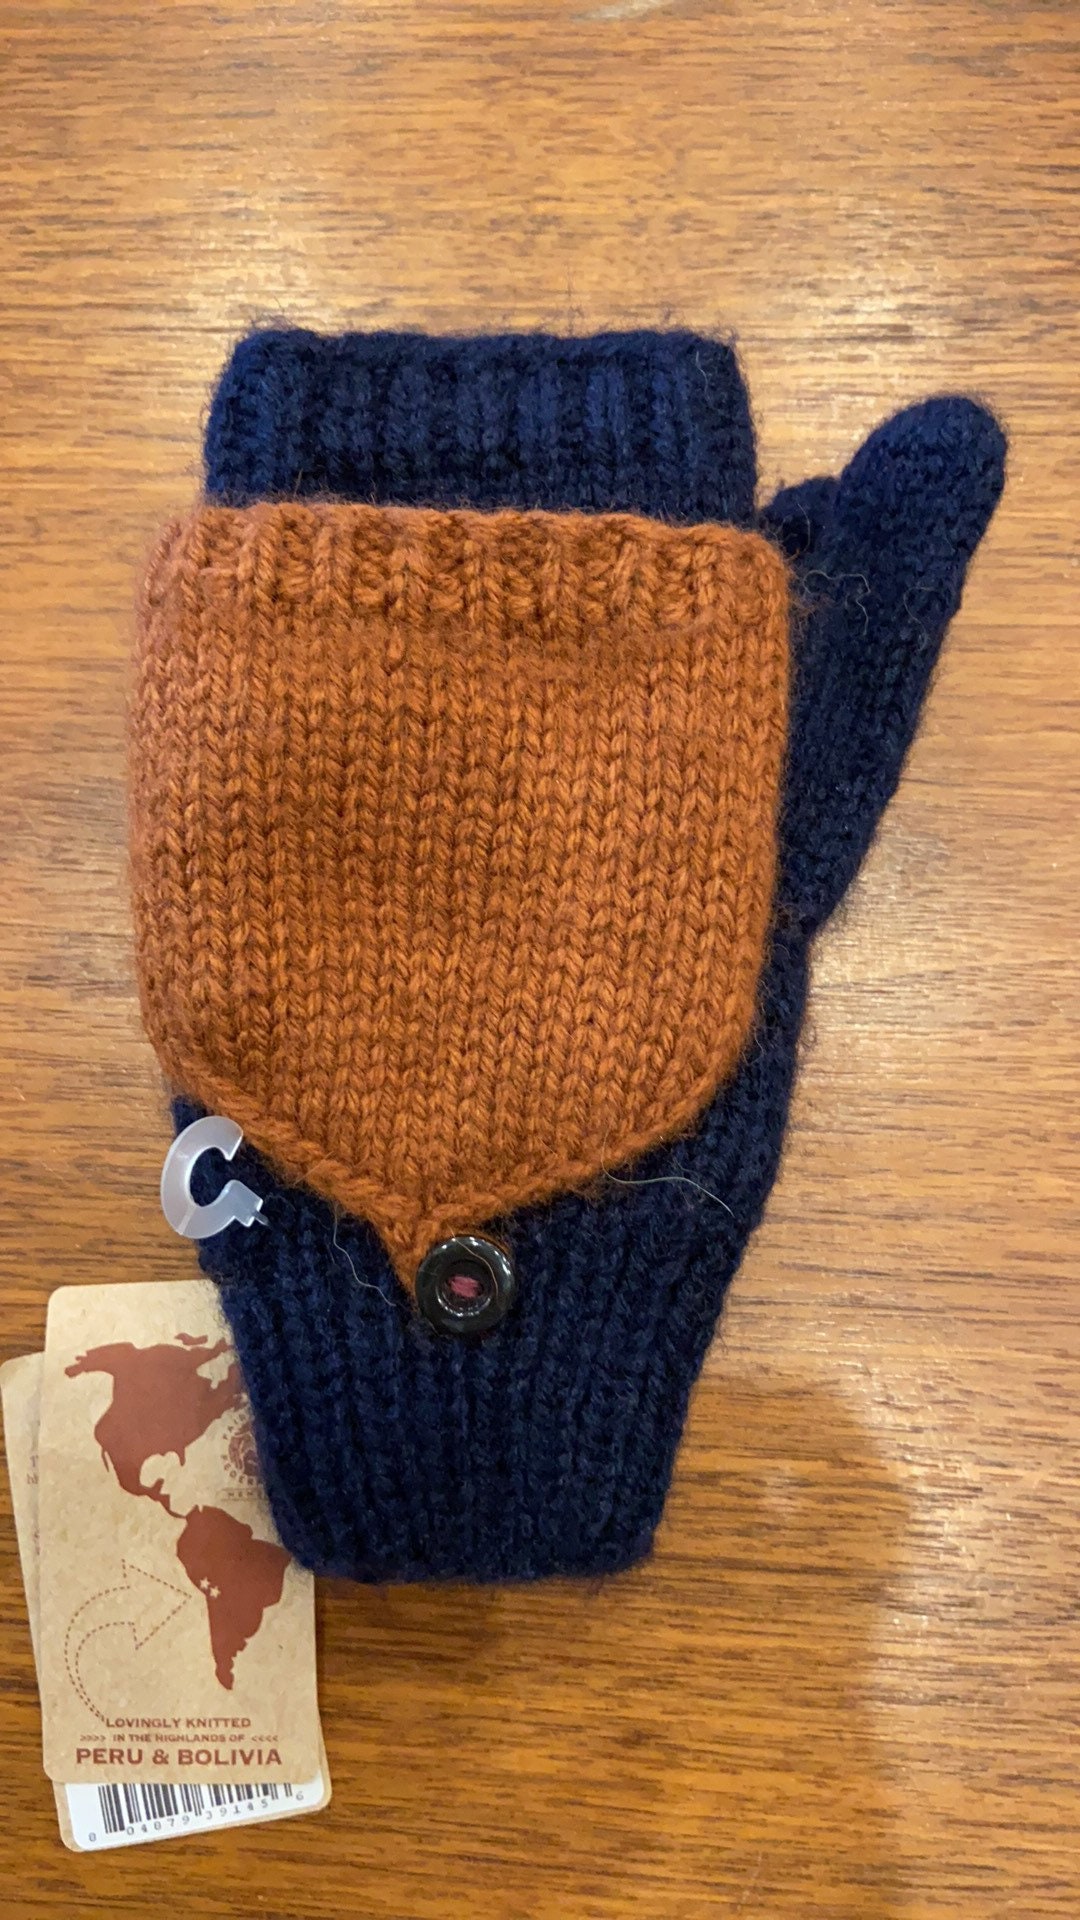 Hand-knit 17% Alpaca Wool Adult Convertible Fingerless Mittens